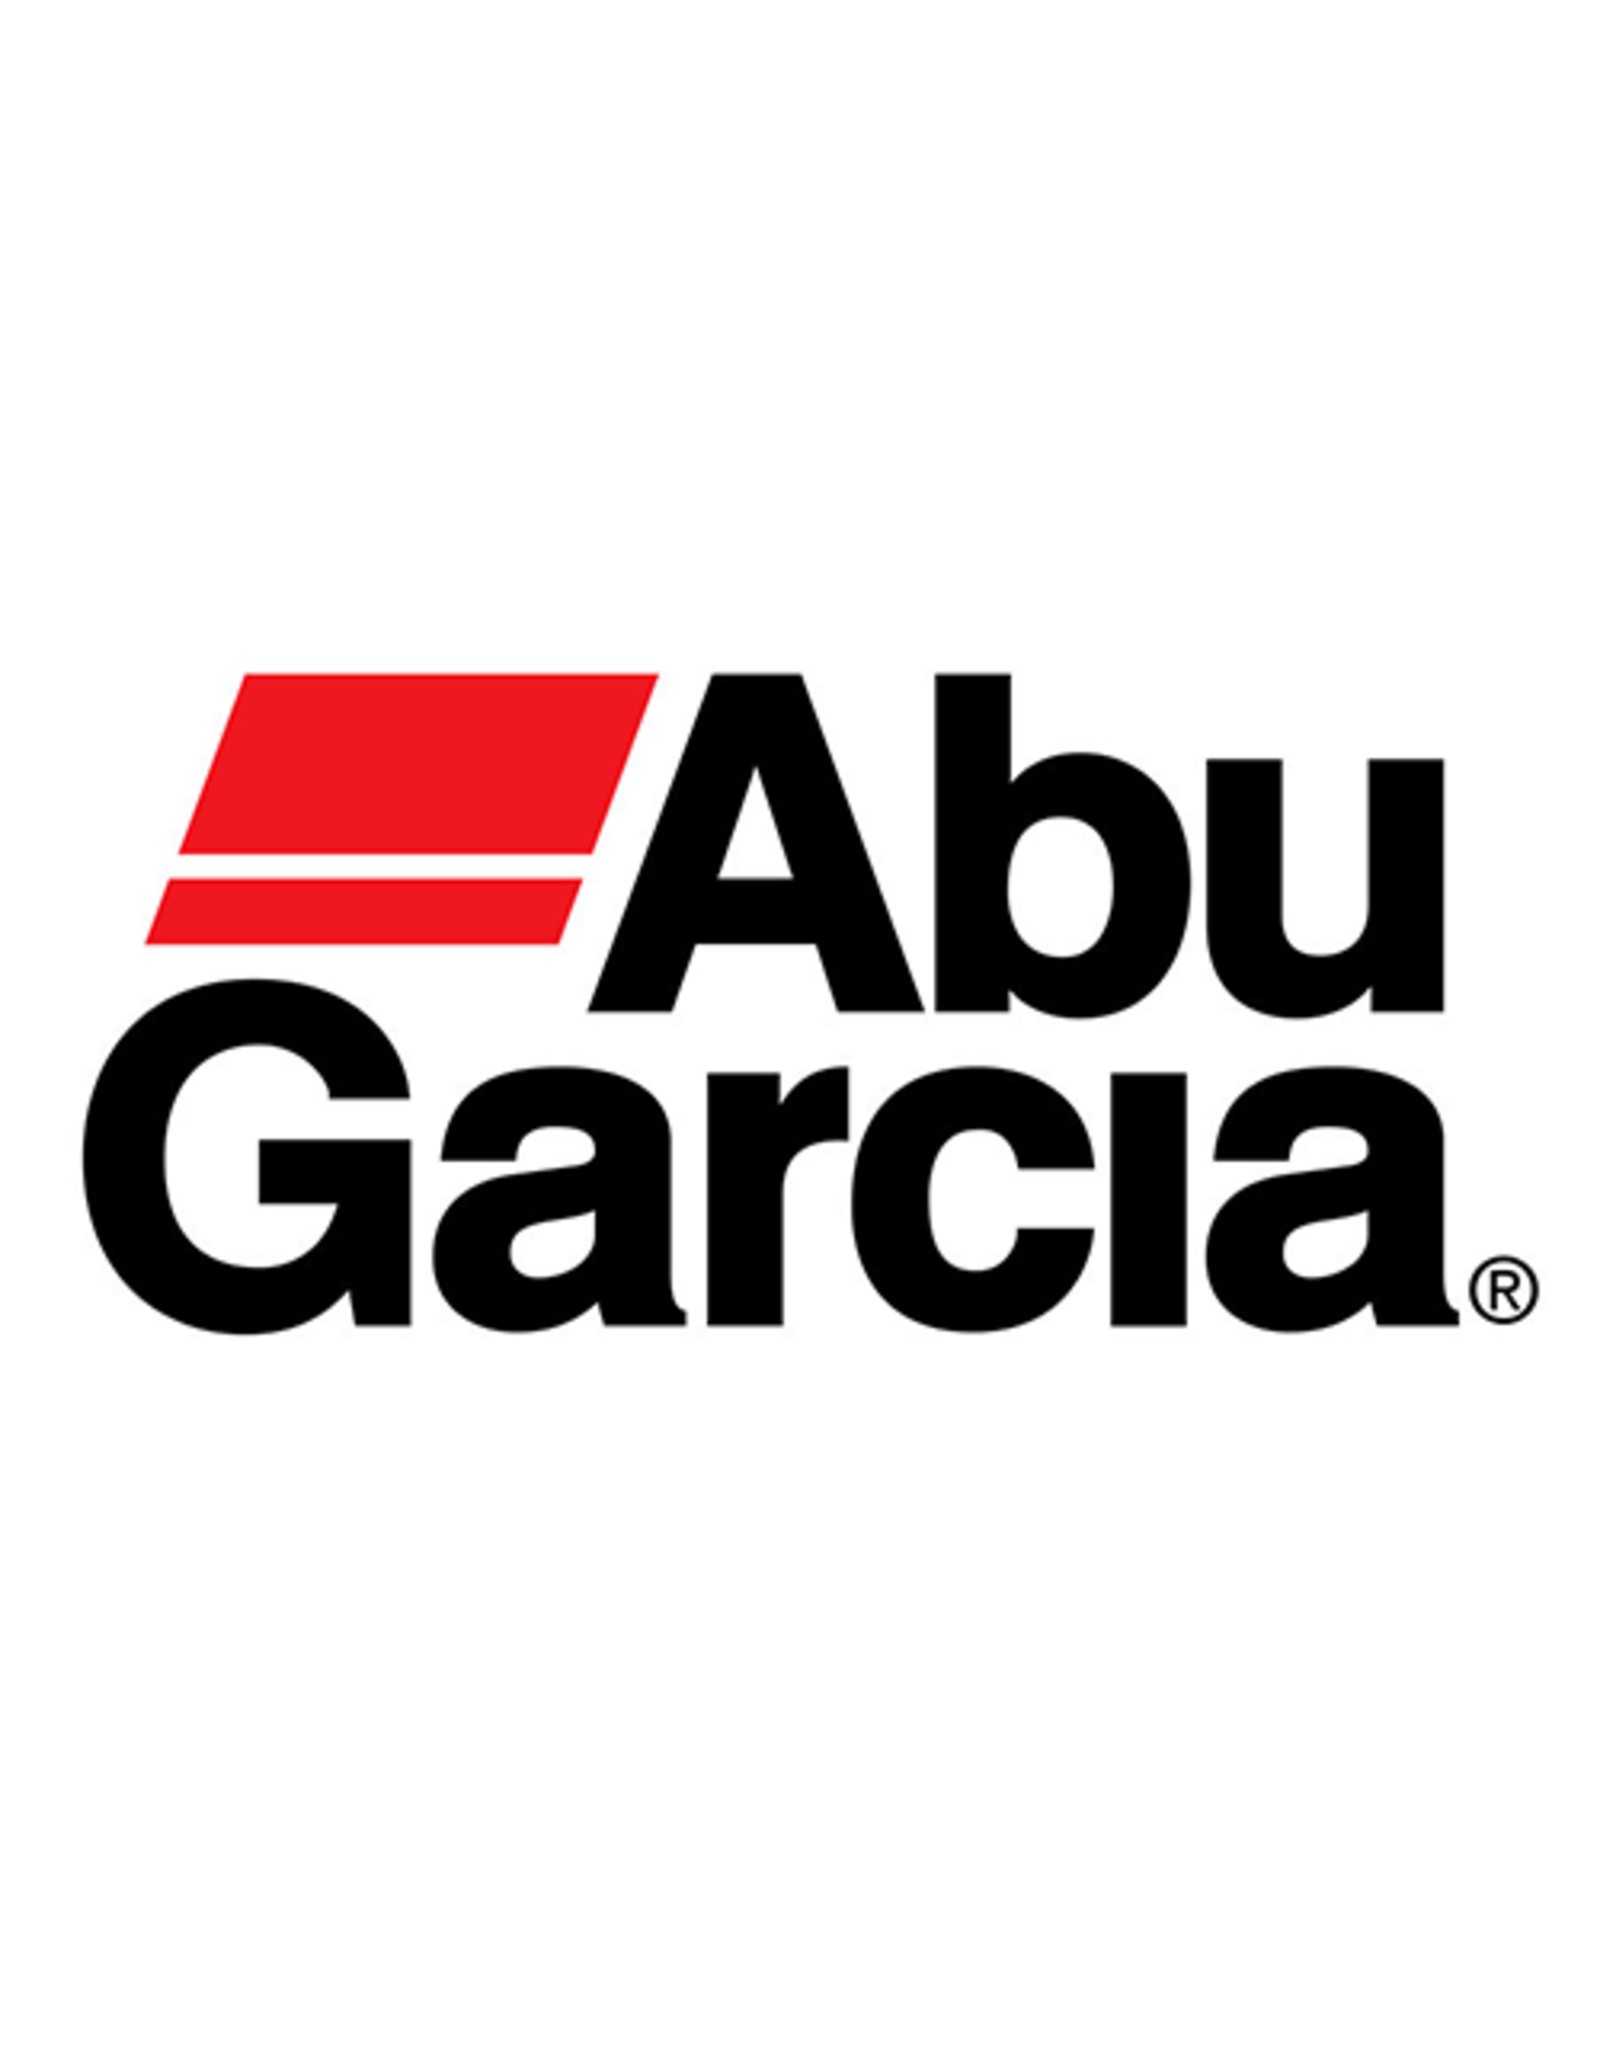 Abu Garcia 72152  HANDLE/ NLA